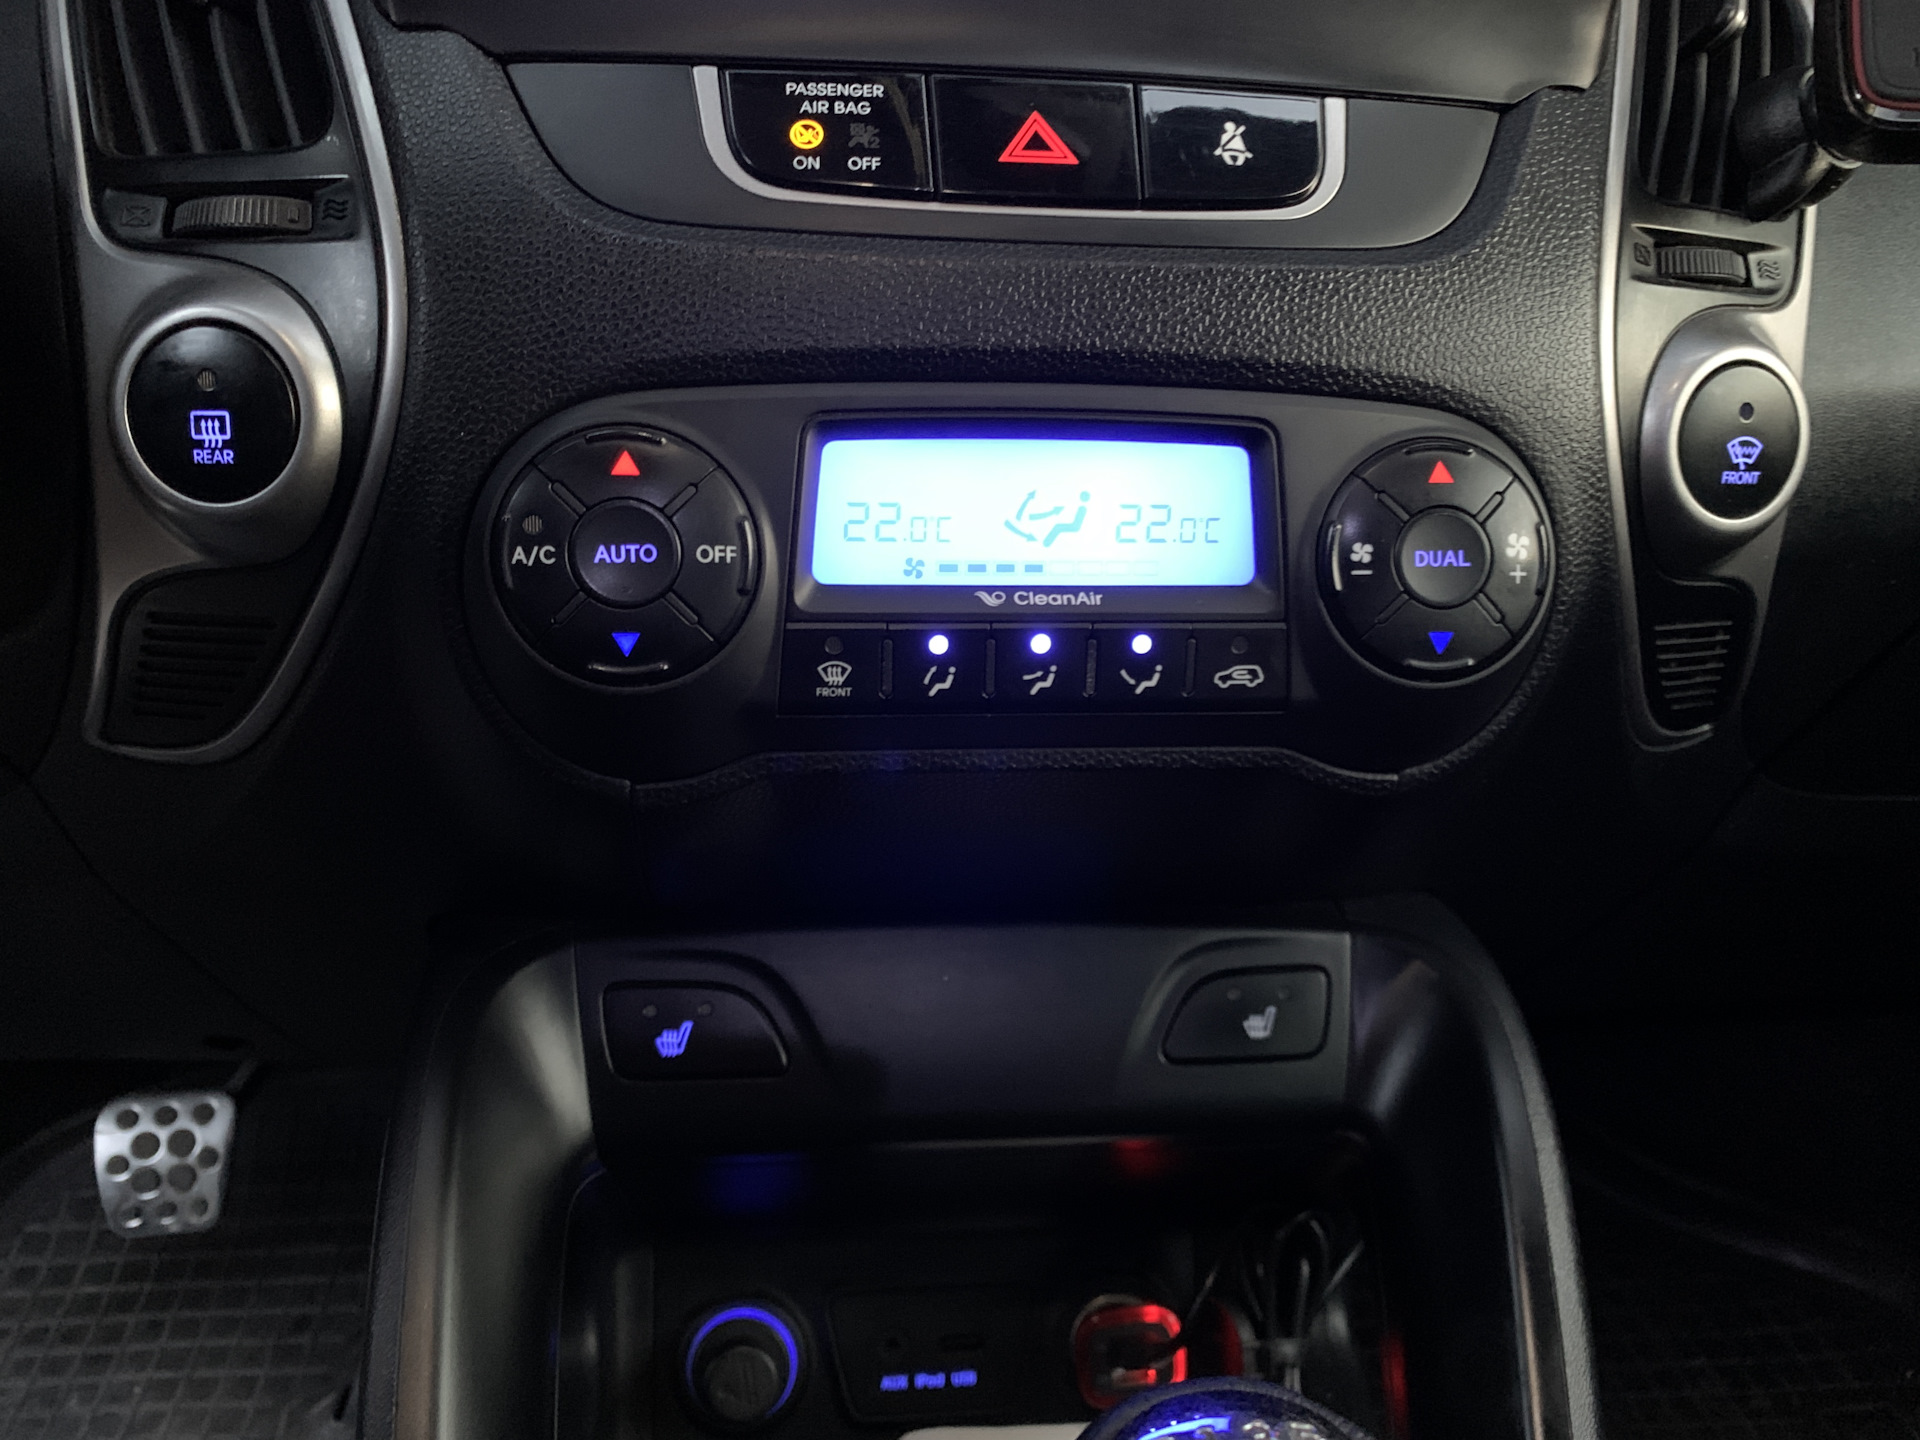 Климат контроль ix35. Экран климат контроля Hyundai ix35. Подсветка кнопок в Hyundai ix35. Подсветка кнопок климата на Hyundai ix35. Пропала подсветка кнопок